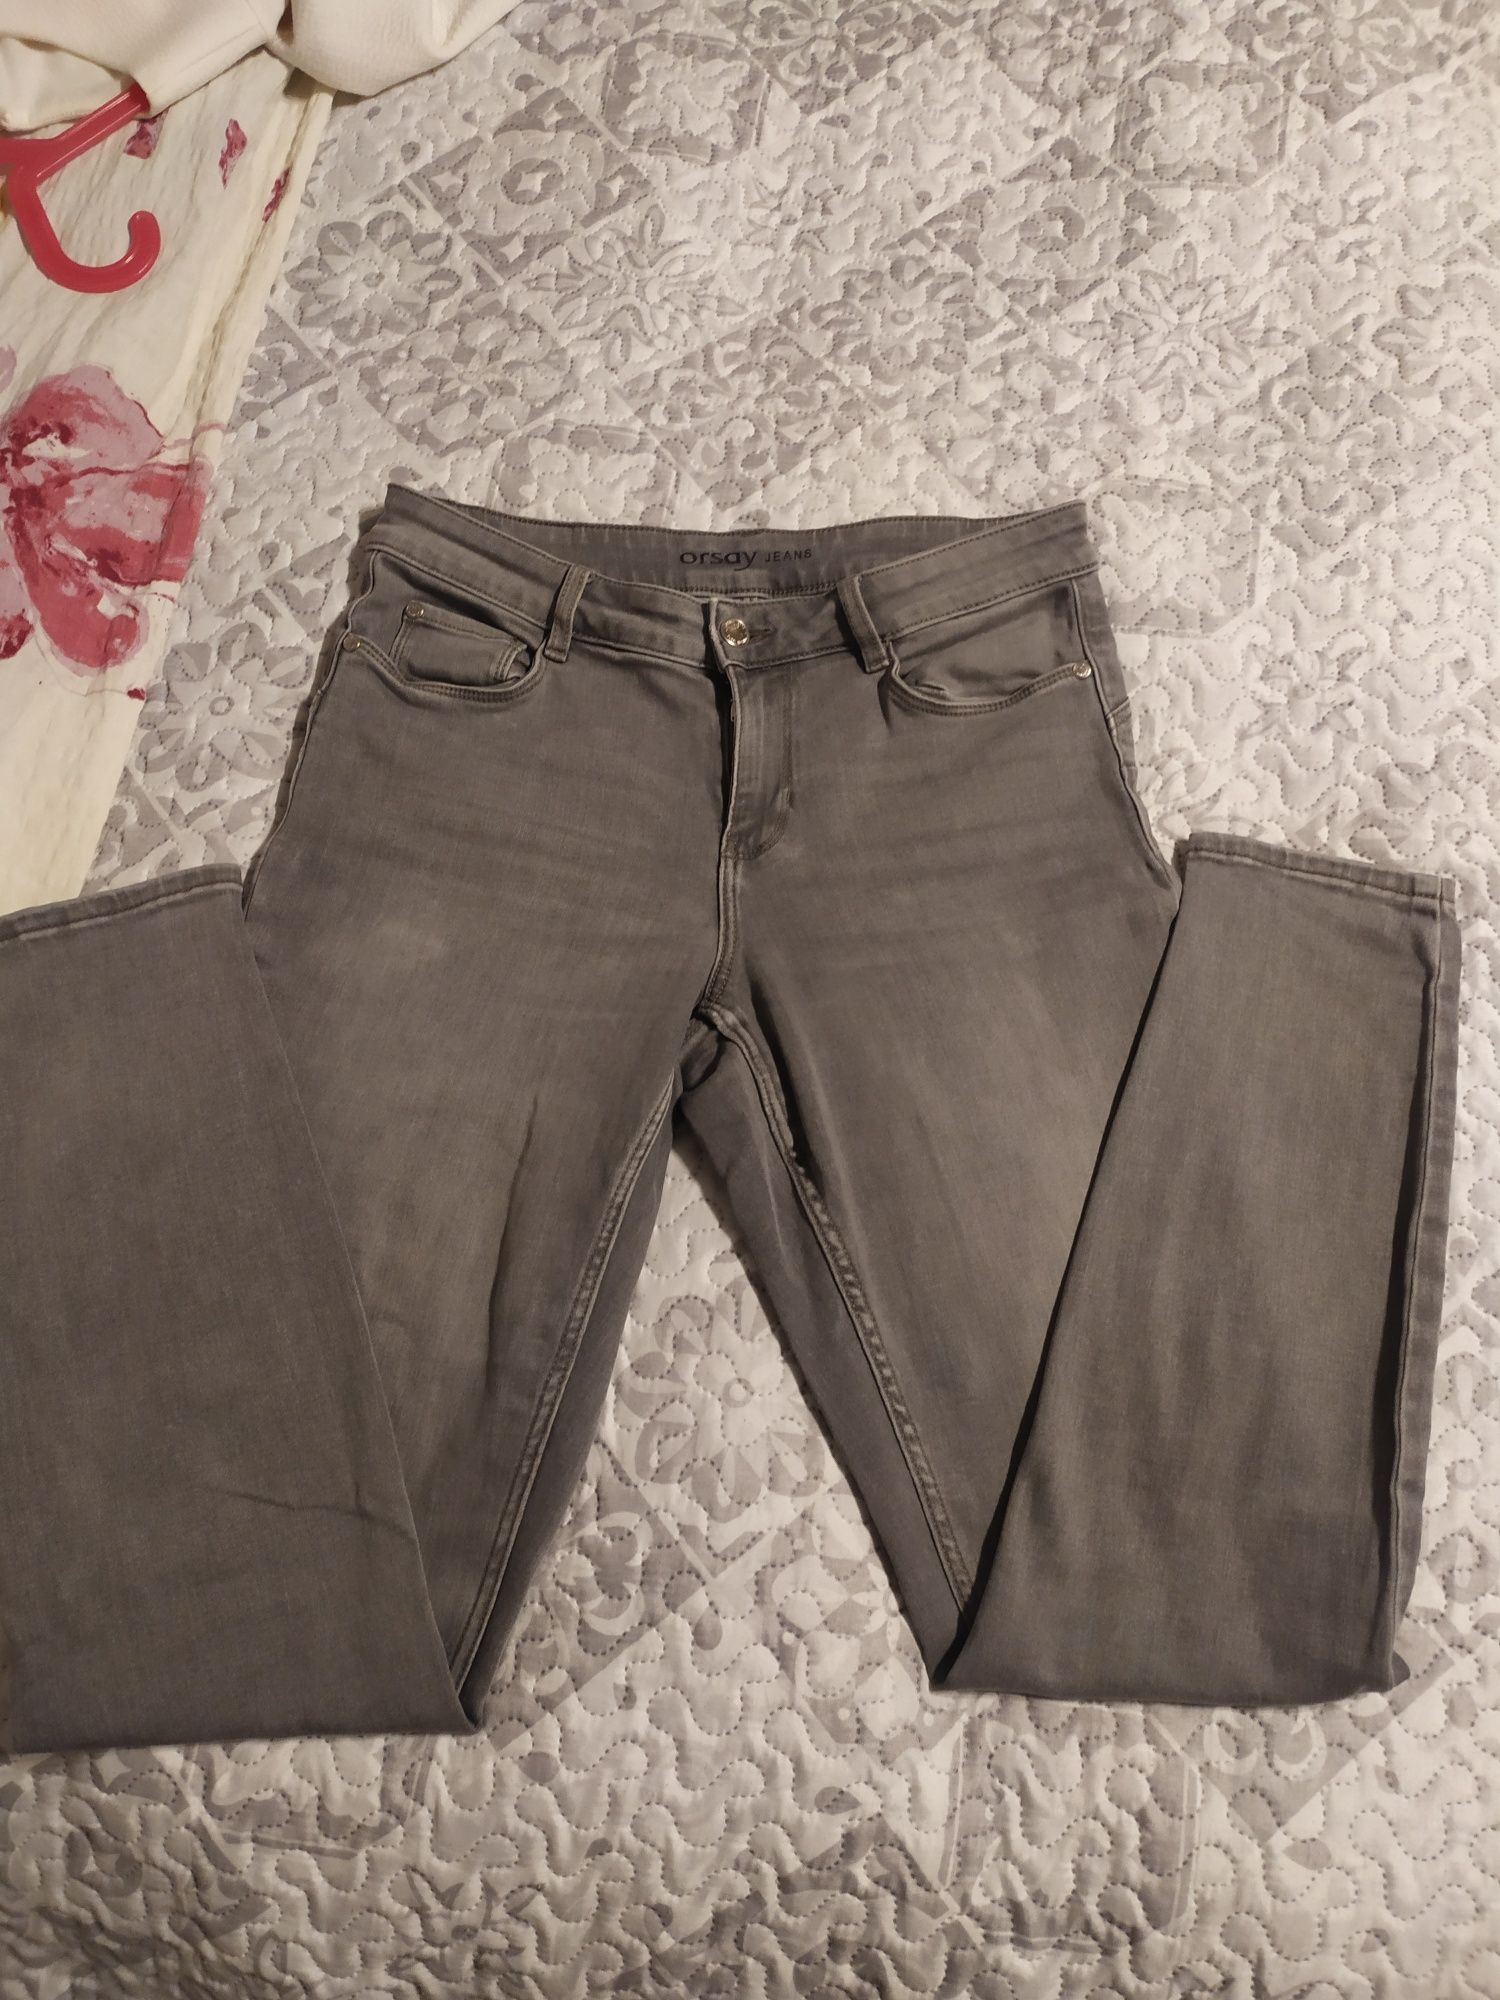 Spodnie jeans pushup Orsay r.38 szare stan bdb elastyczne